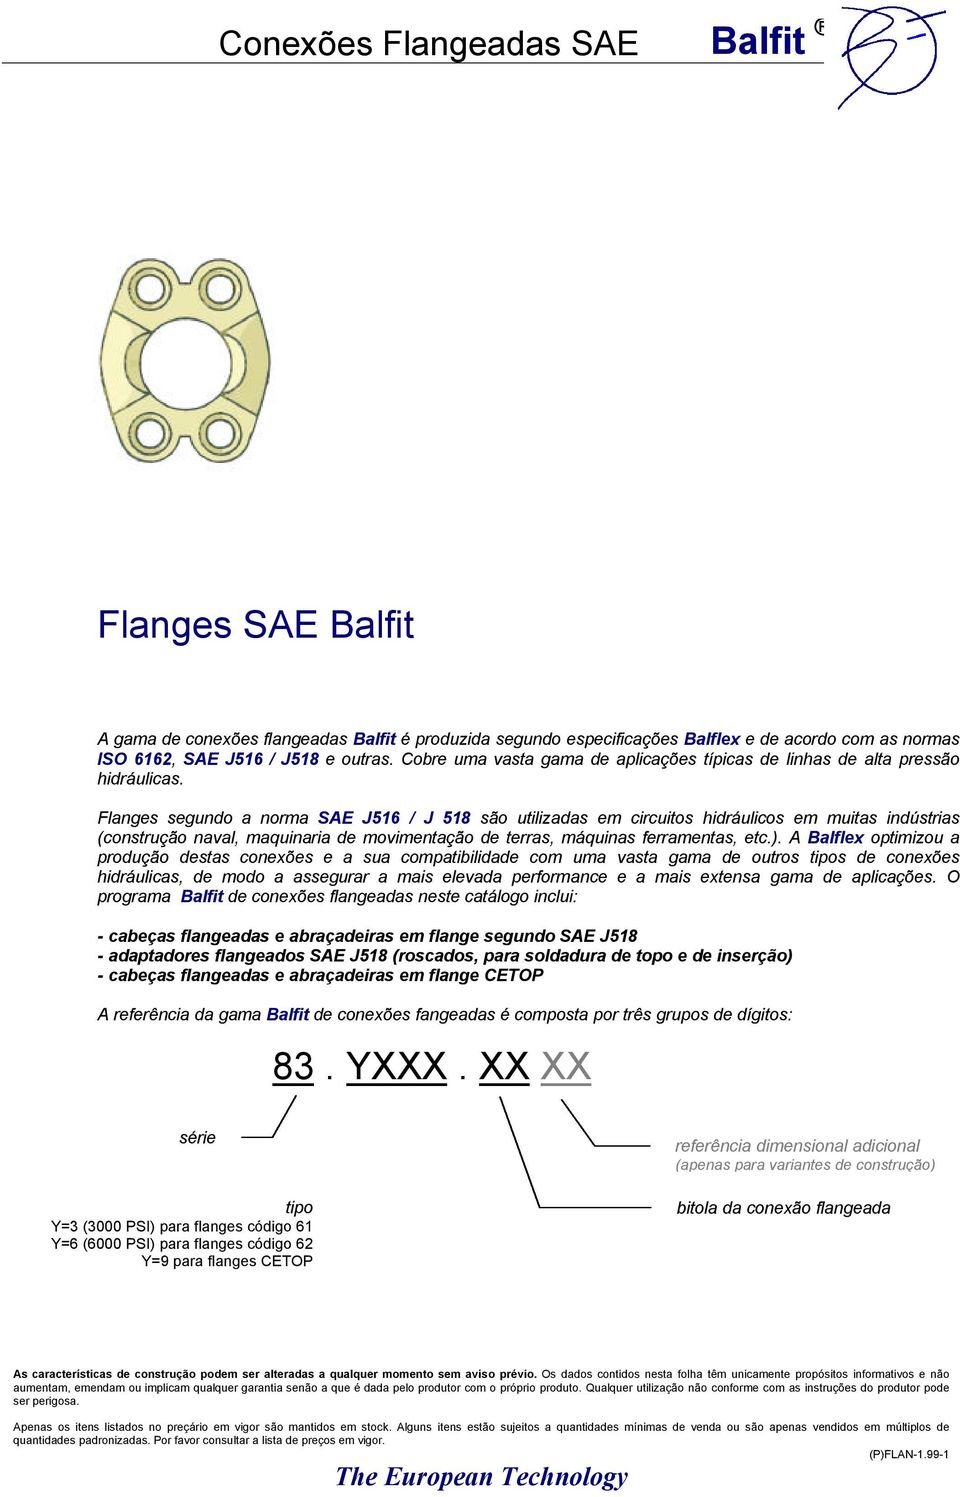 Flanges segundo a norma SAE J516 / J 518 são utilizadas em circuitos hidráulicos em muitas indústrias (construção naval, maquinaria de movimentação de terras, máquinas ferramentas, etc.).